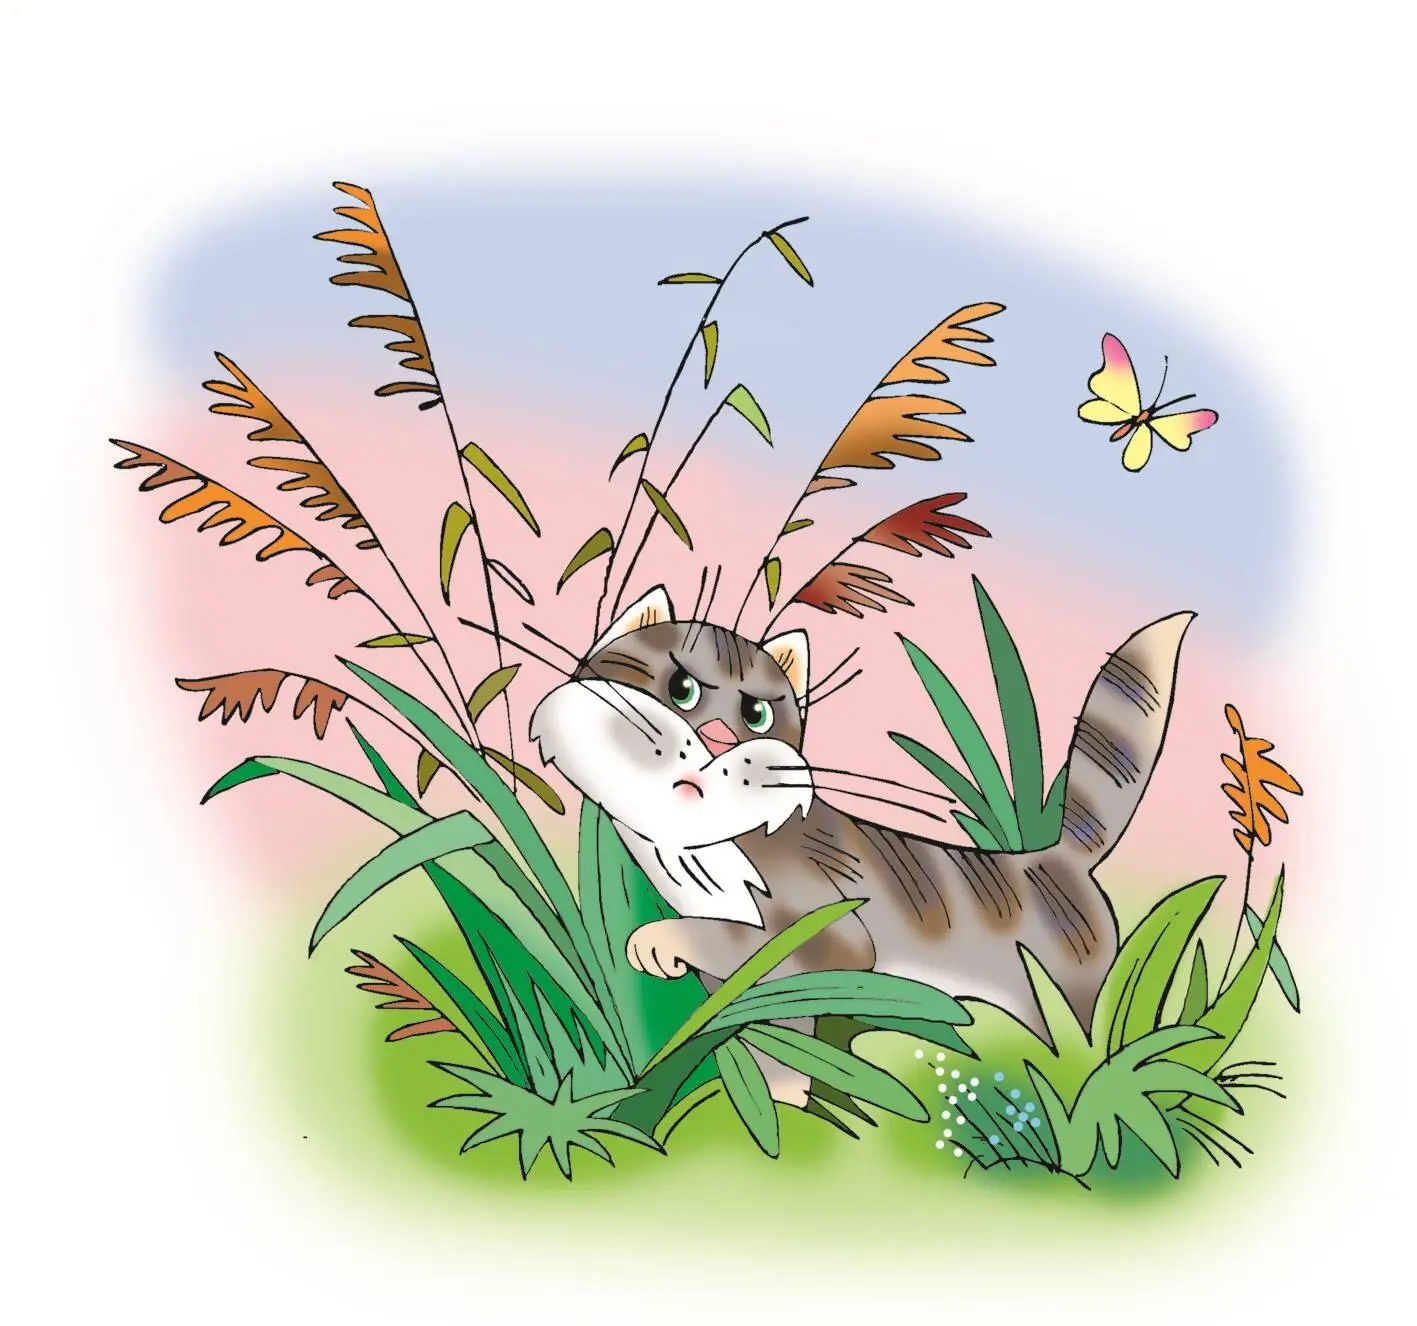 А дикий кот в траве Мурмур В гнезде птенцы Пипит пипит А волк в - фото 13